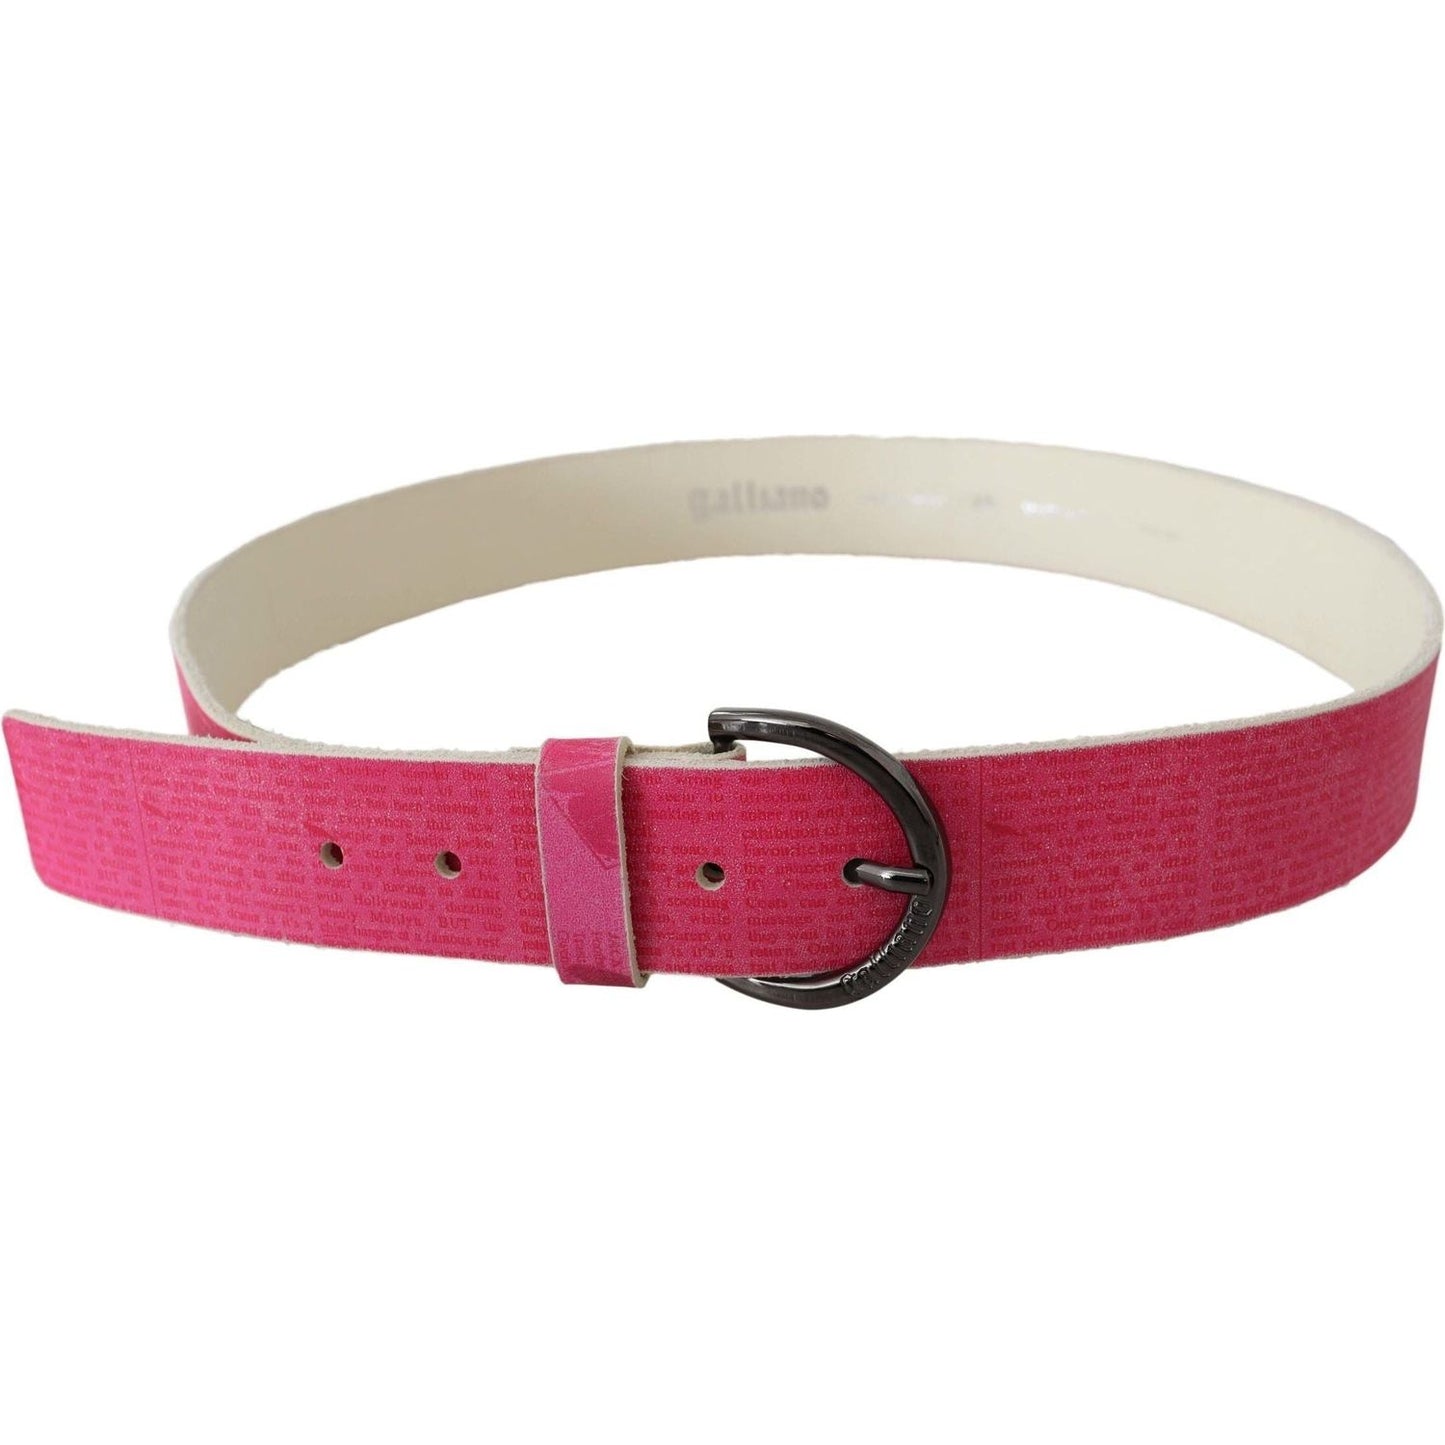 John Galliano Elegant Pink Leather Fashion Belt Belt pink-leather-letter-logo-design-round-buckle-belt